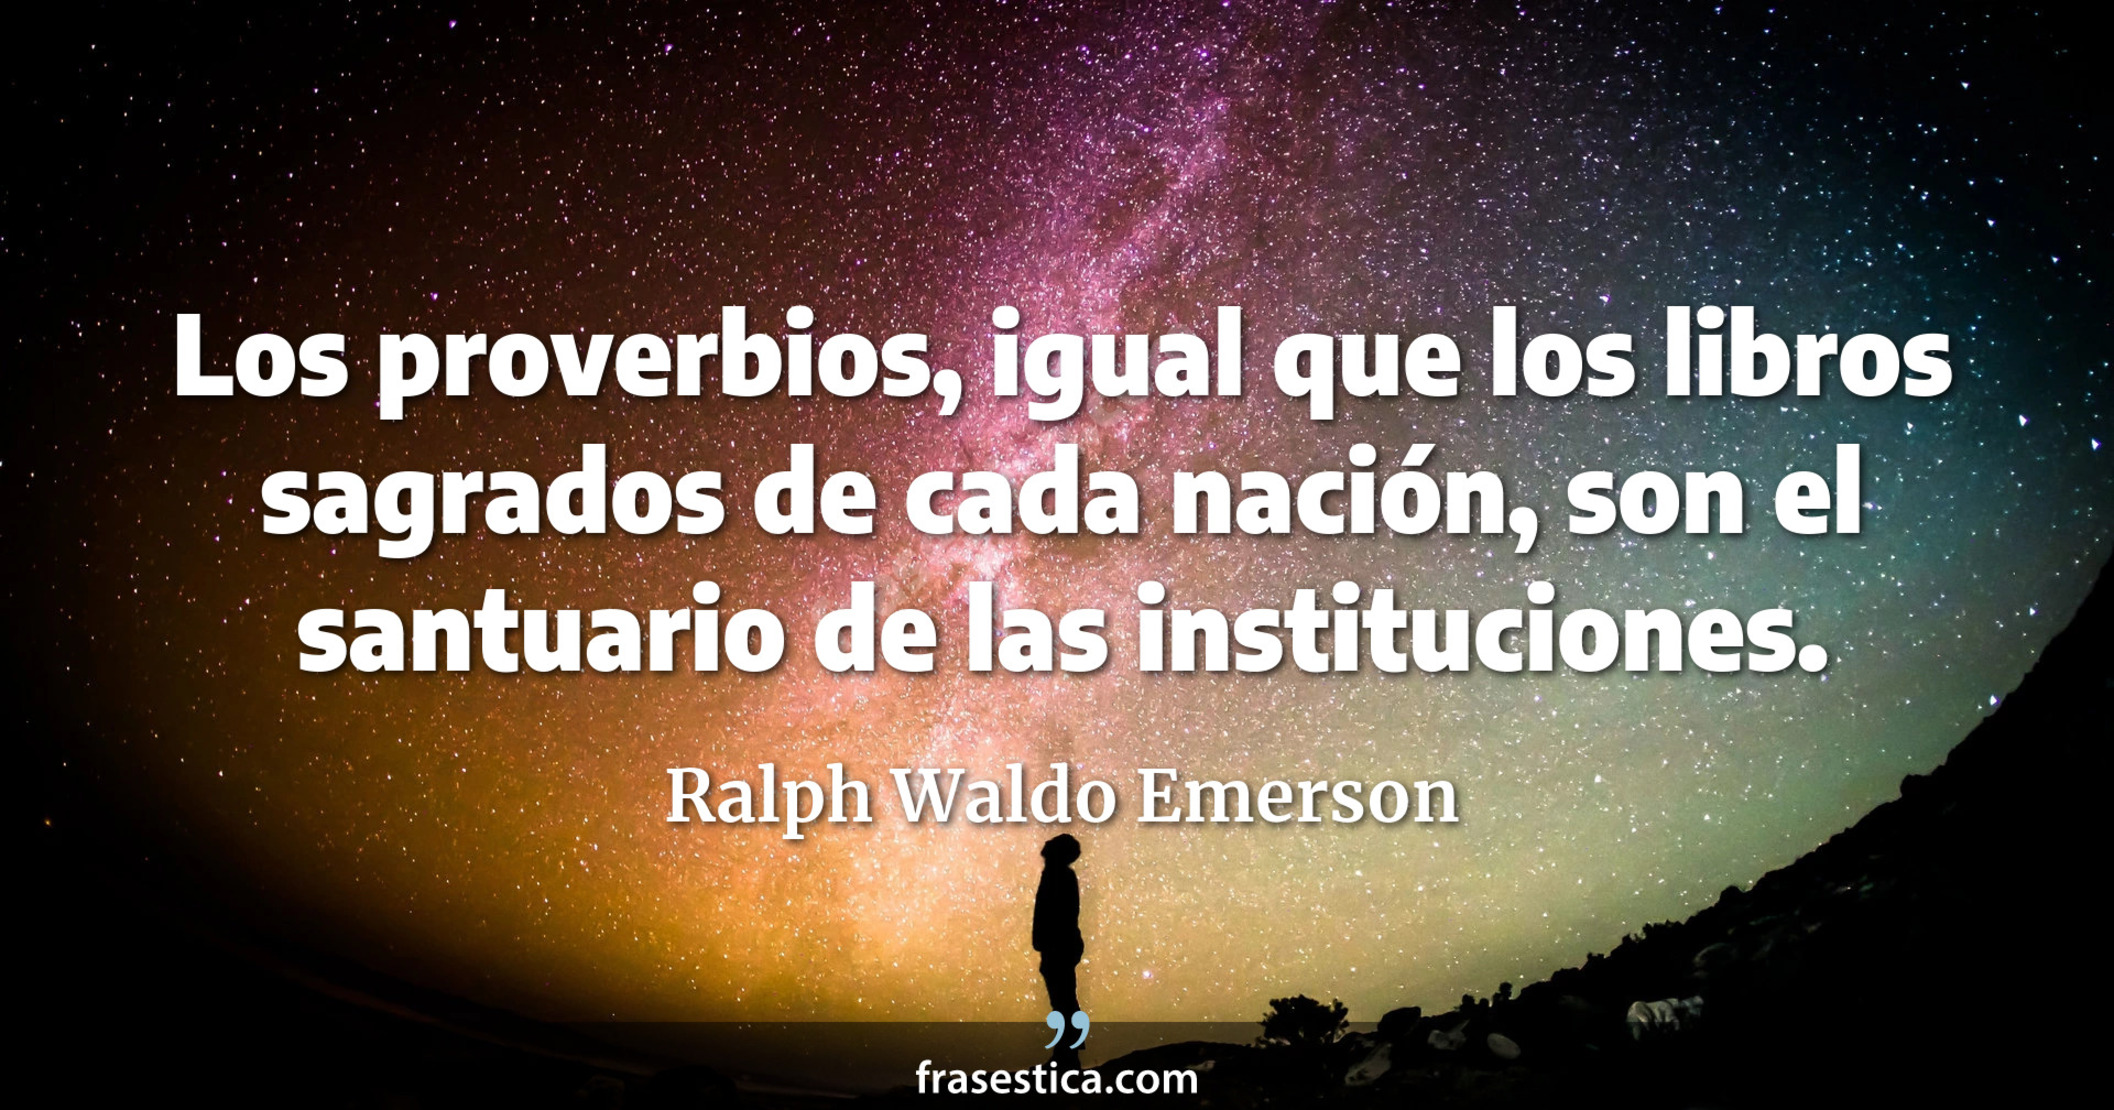 Los proverbios, igual que los libros sagrados de cada nación, son el santuario de las instituciones. - Ralph Waldo Emerson